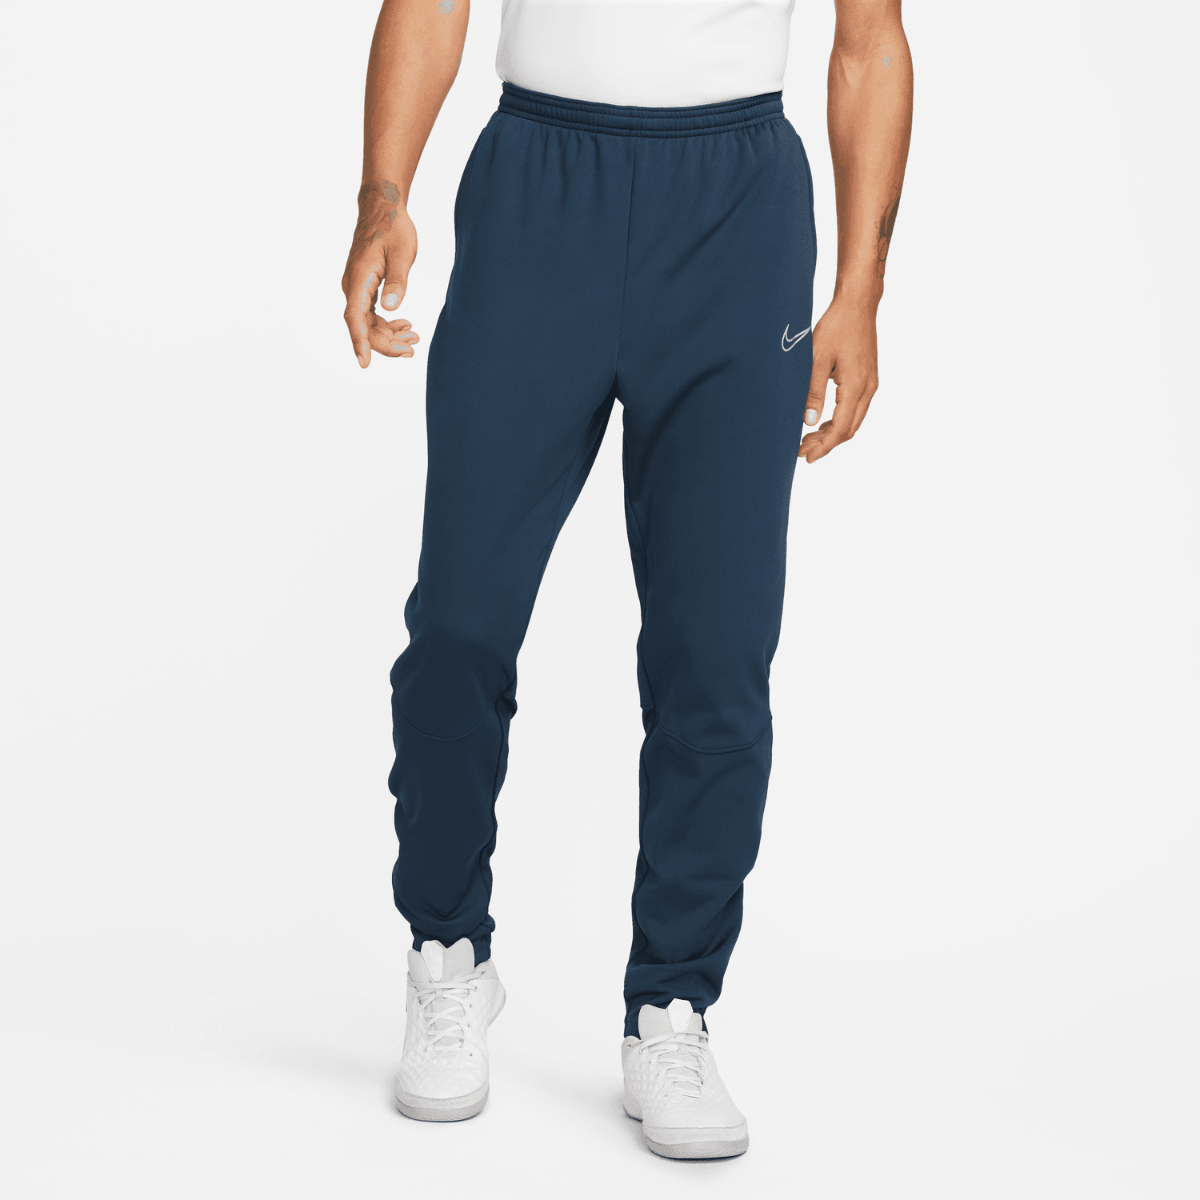 Pantaloni Nike Therma-Fit Academy - Blu/Bianco